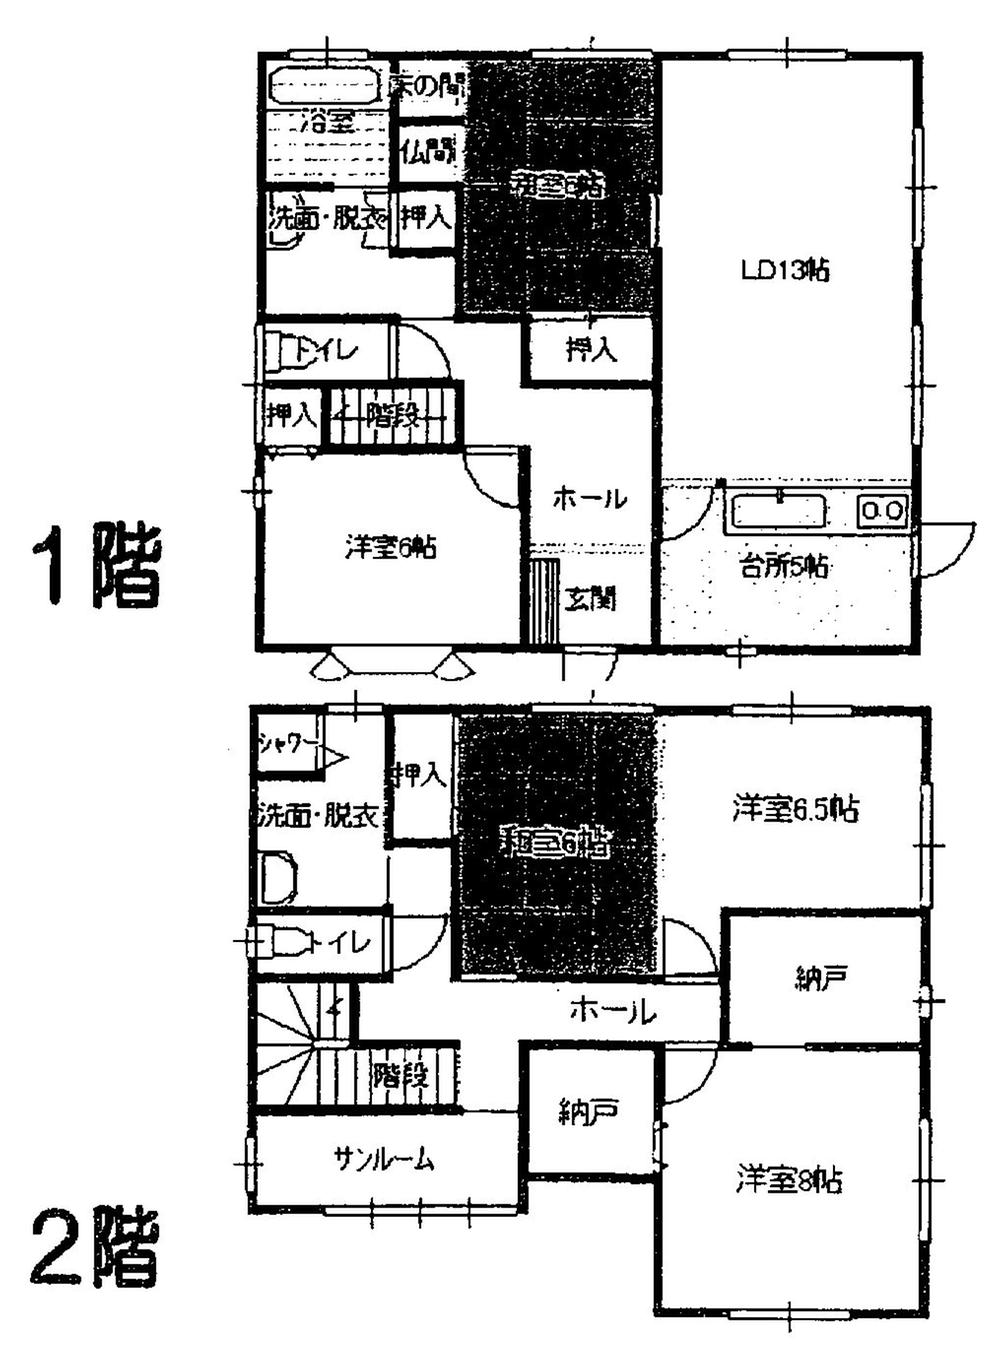 Floor plan. 21,800,000 yen, 5LDK + S (storeroom), Land area 327 sq m , Building area 140.2 sq m